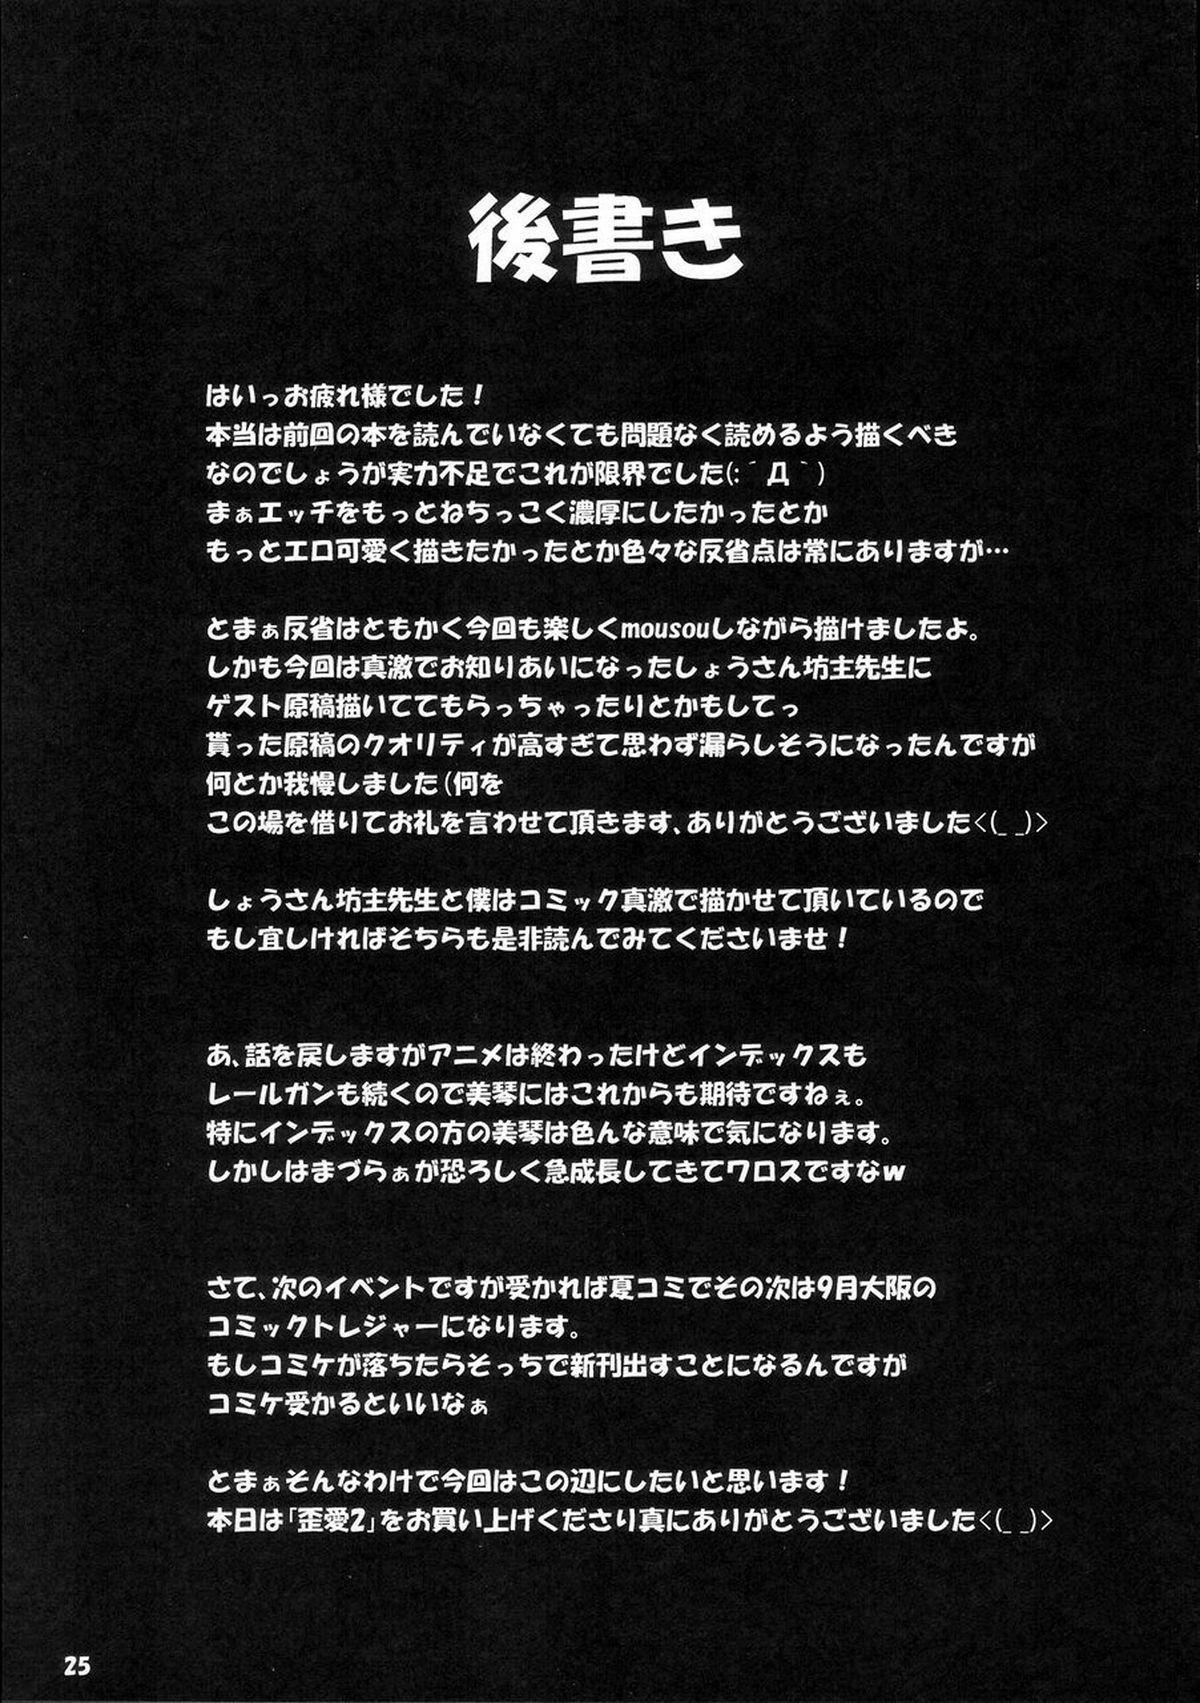 Sixtynine Wai Ai 2 - Toaru kagaku no railgun Fleshlight - Page 24